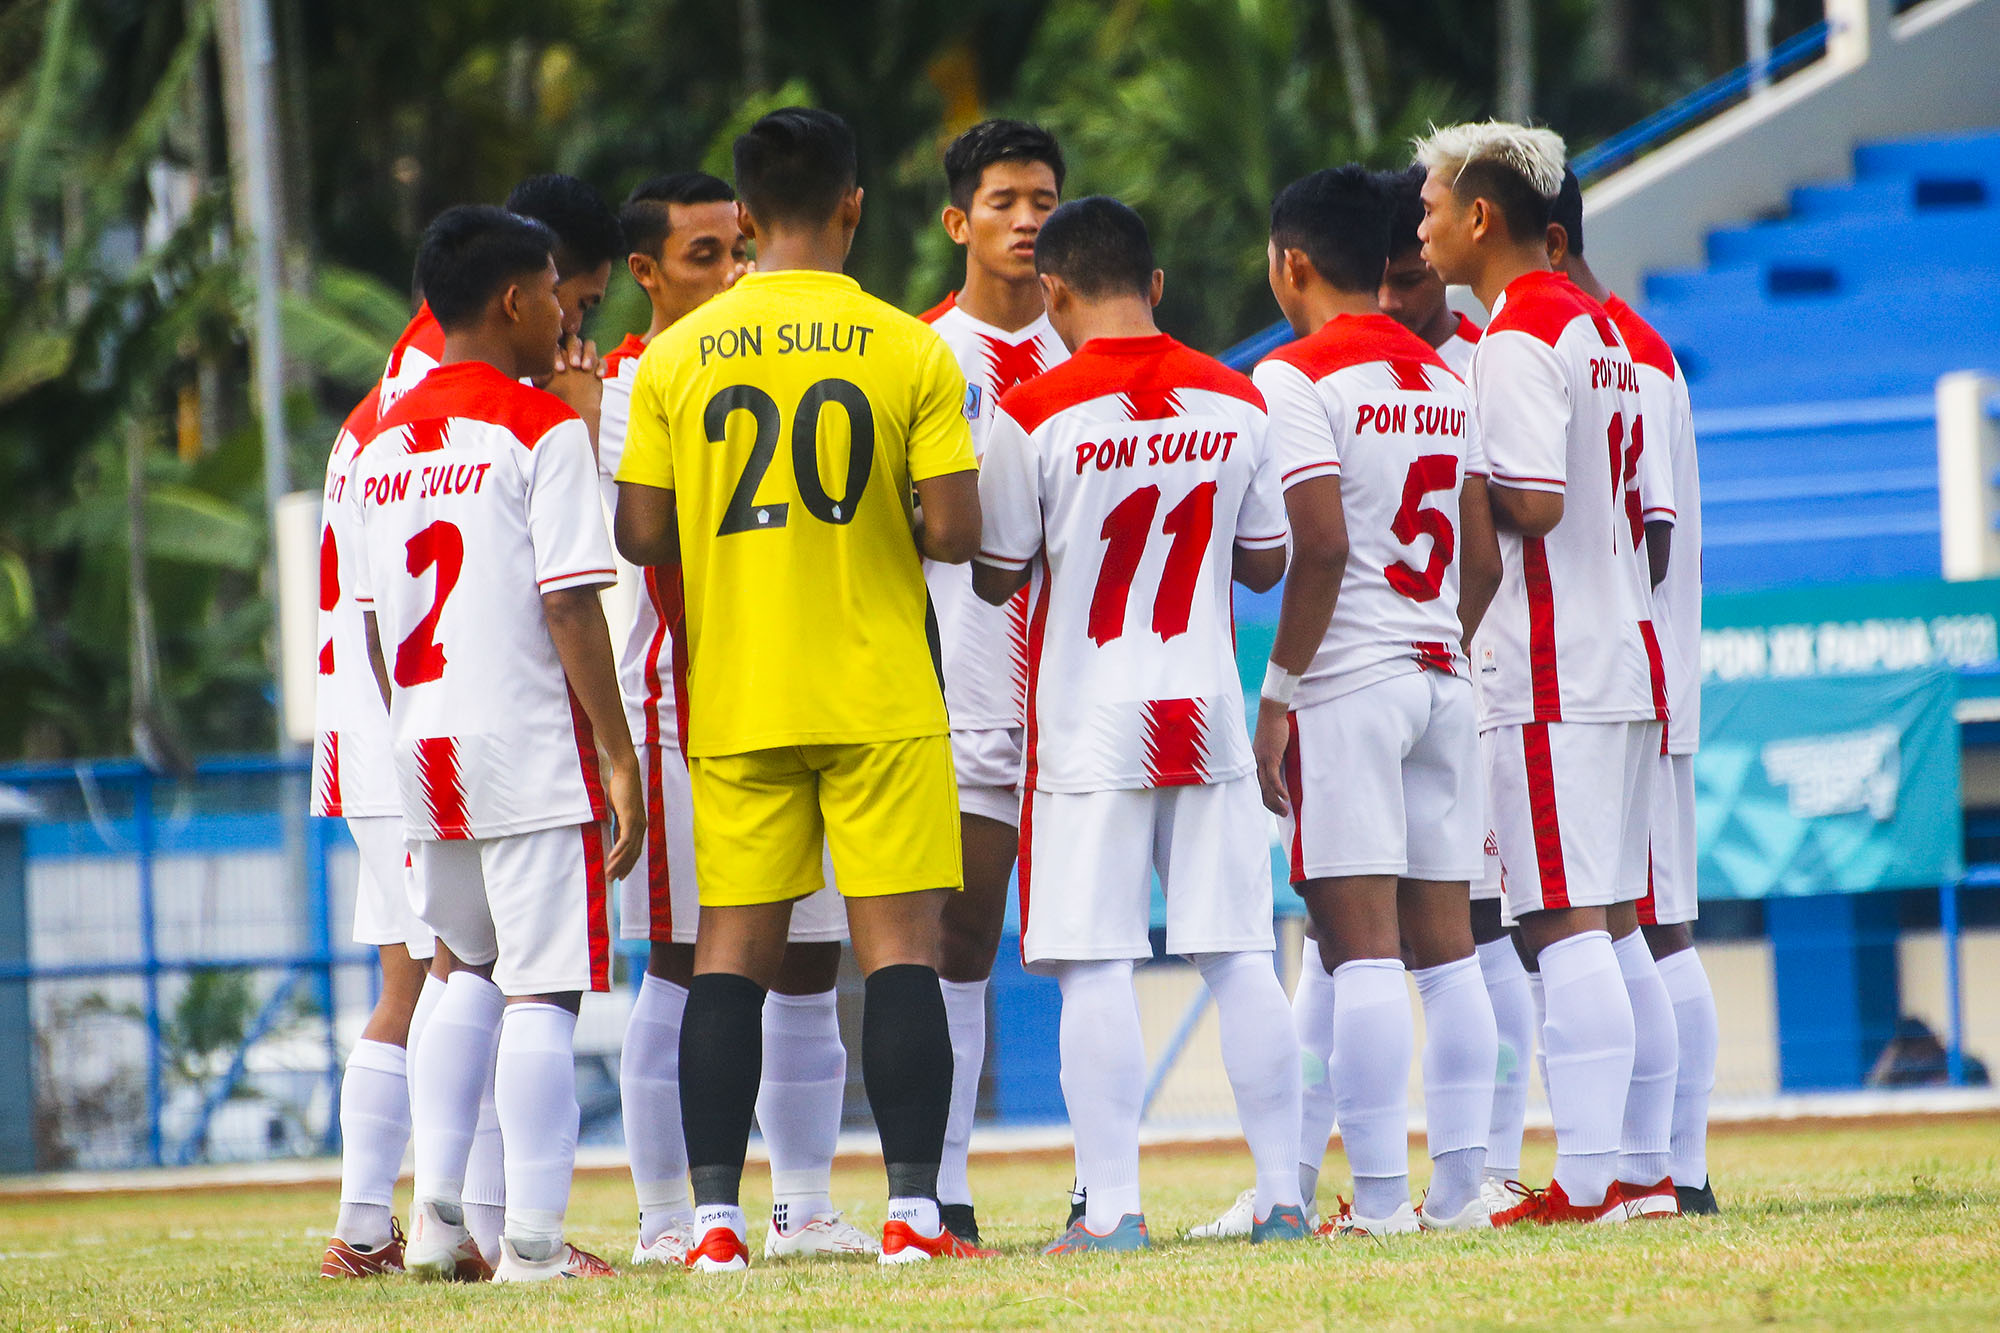 Hasil Sepak Bola Putra PON XX Papua 2021: Sulut dan Malut Menang, Jateng vs Sumut Imbang